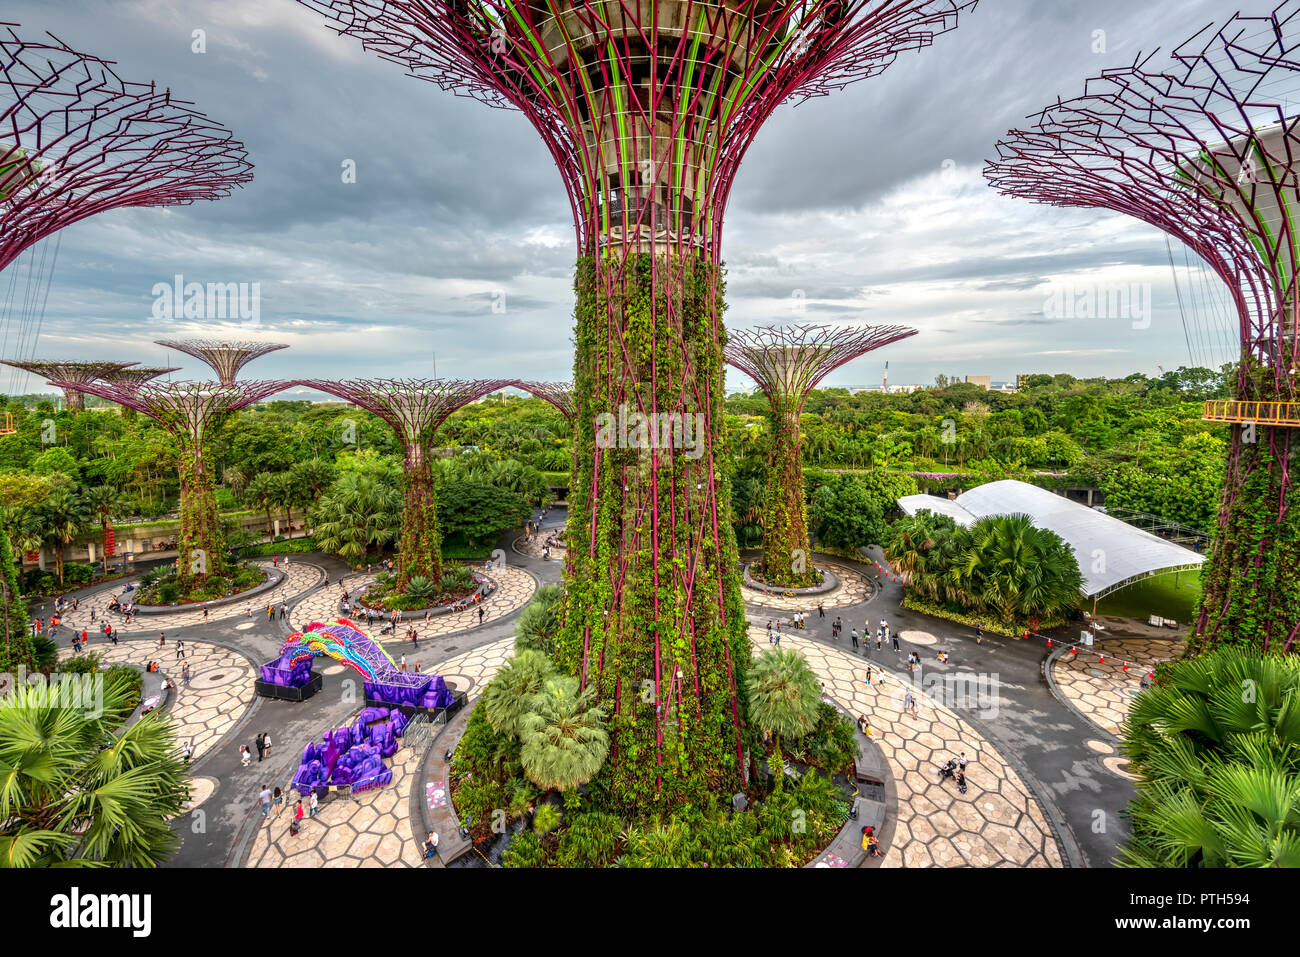 L'Supertree Grove dans les jardins de la baie nature park, Singapore Banque D'Images